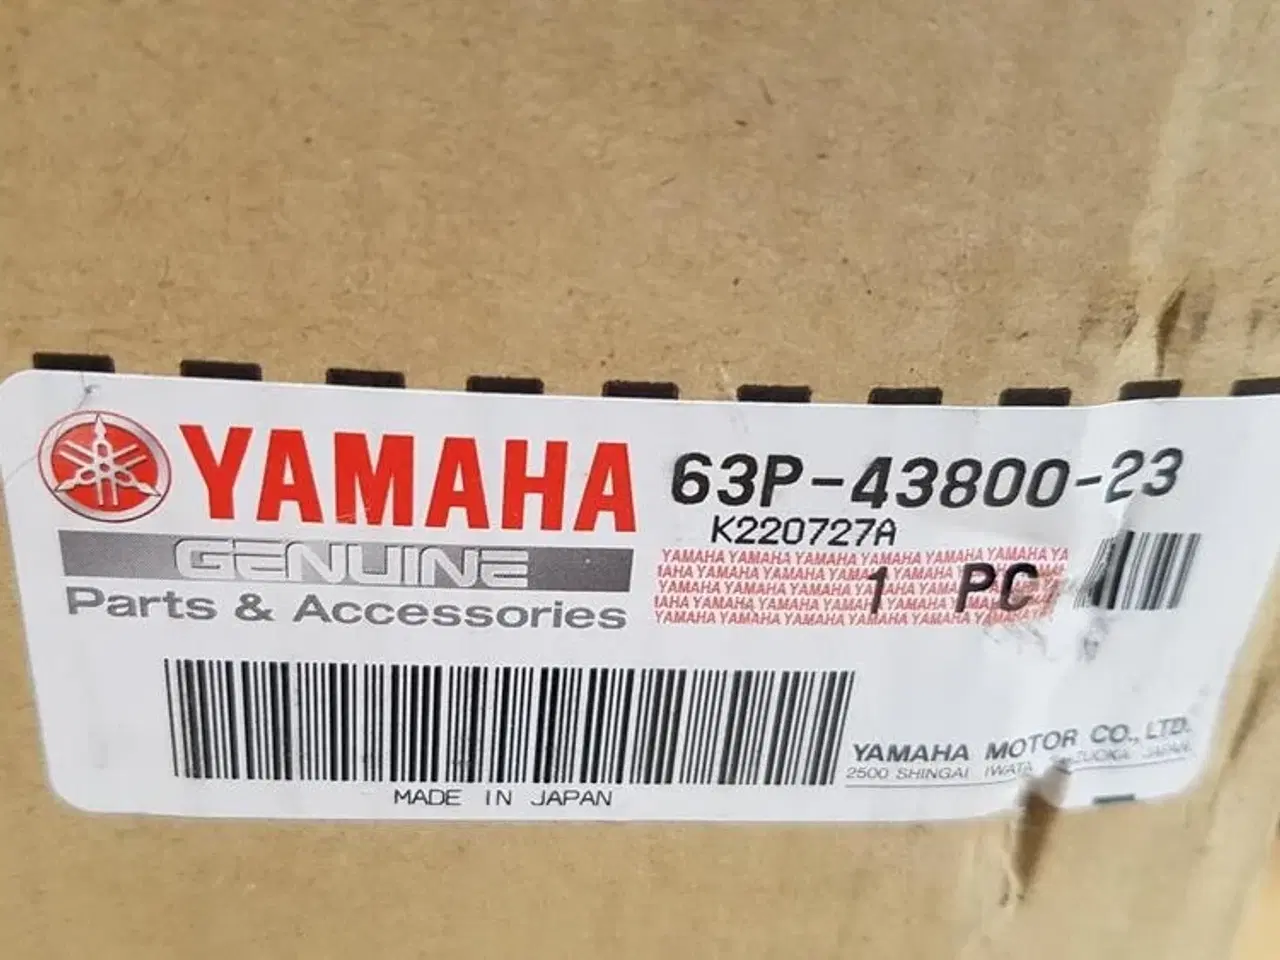 Billede 1 - Yamaha Power Trim & Tilt - Renoveret